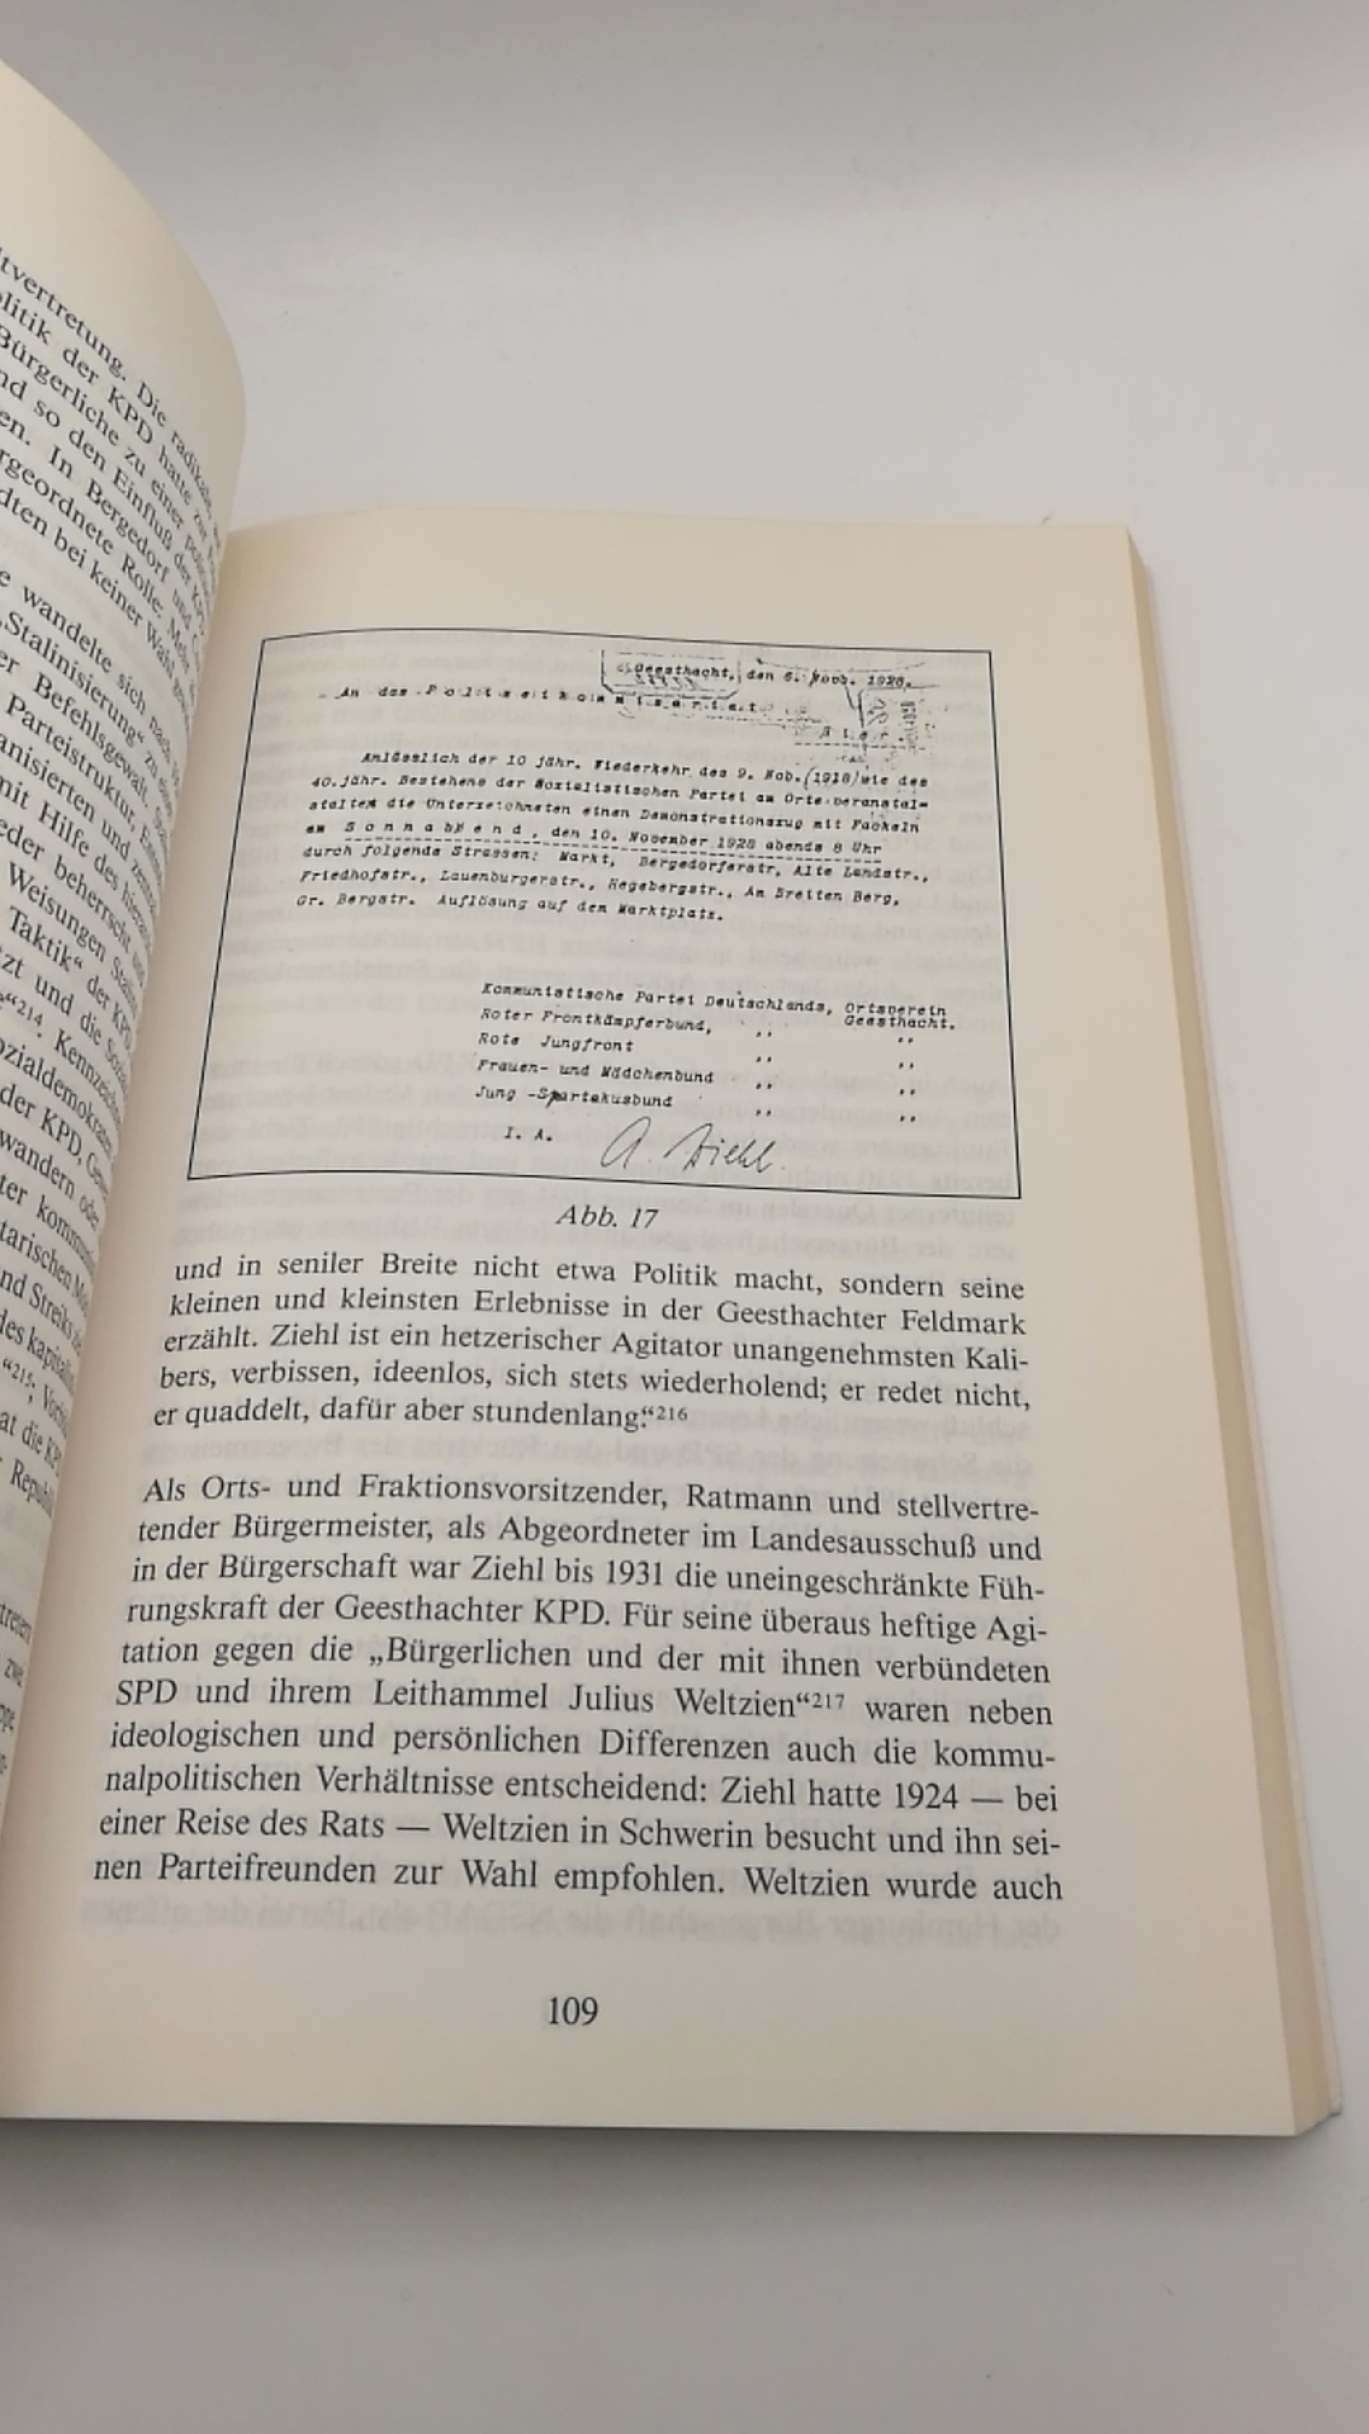 Menapace, Bernhard Michael: "Klein-Moskau" wird braun Geesthacht in der Endphase der Weimarer Republik (1928 - 1933)